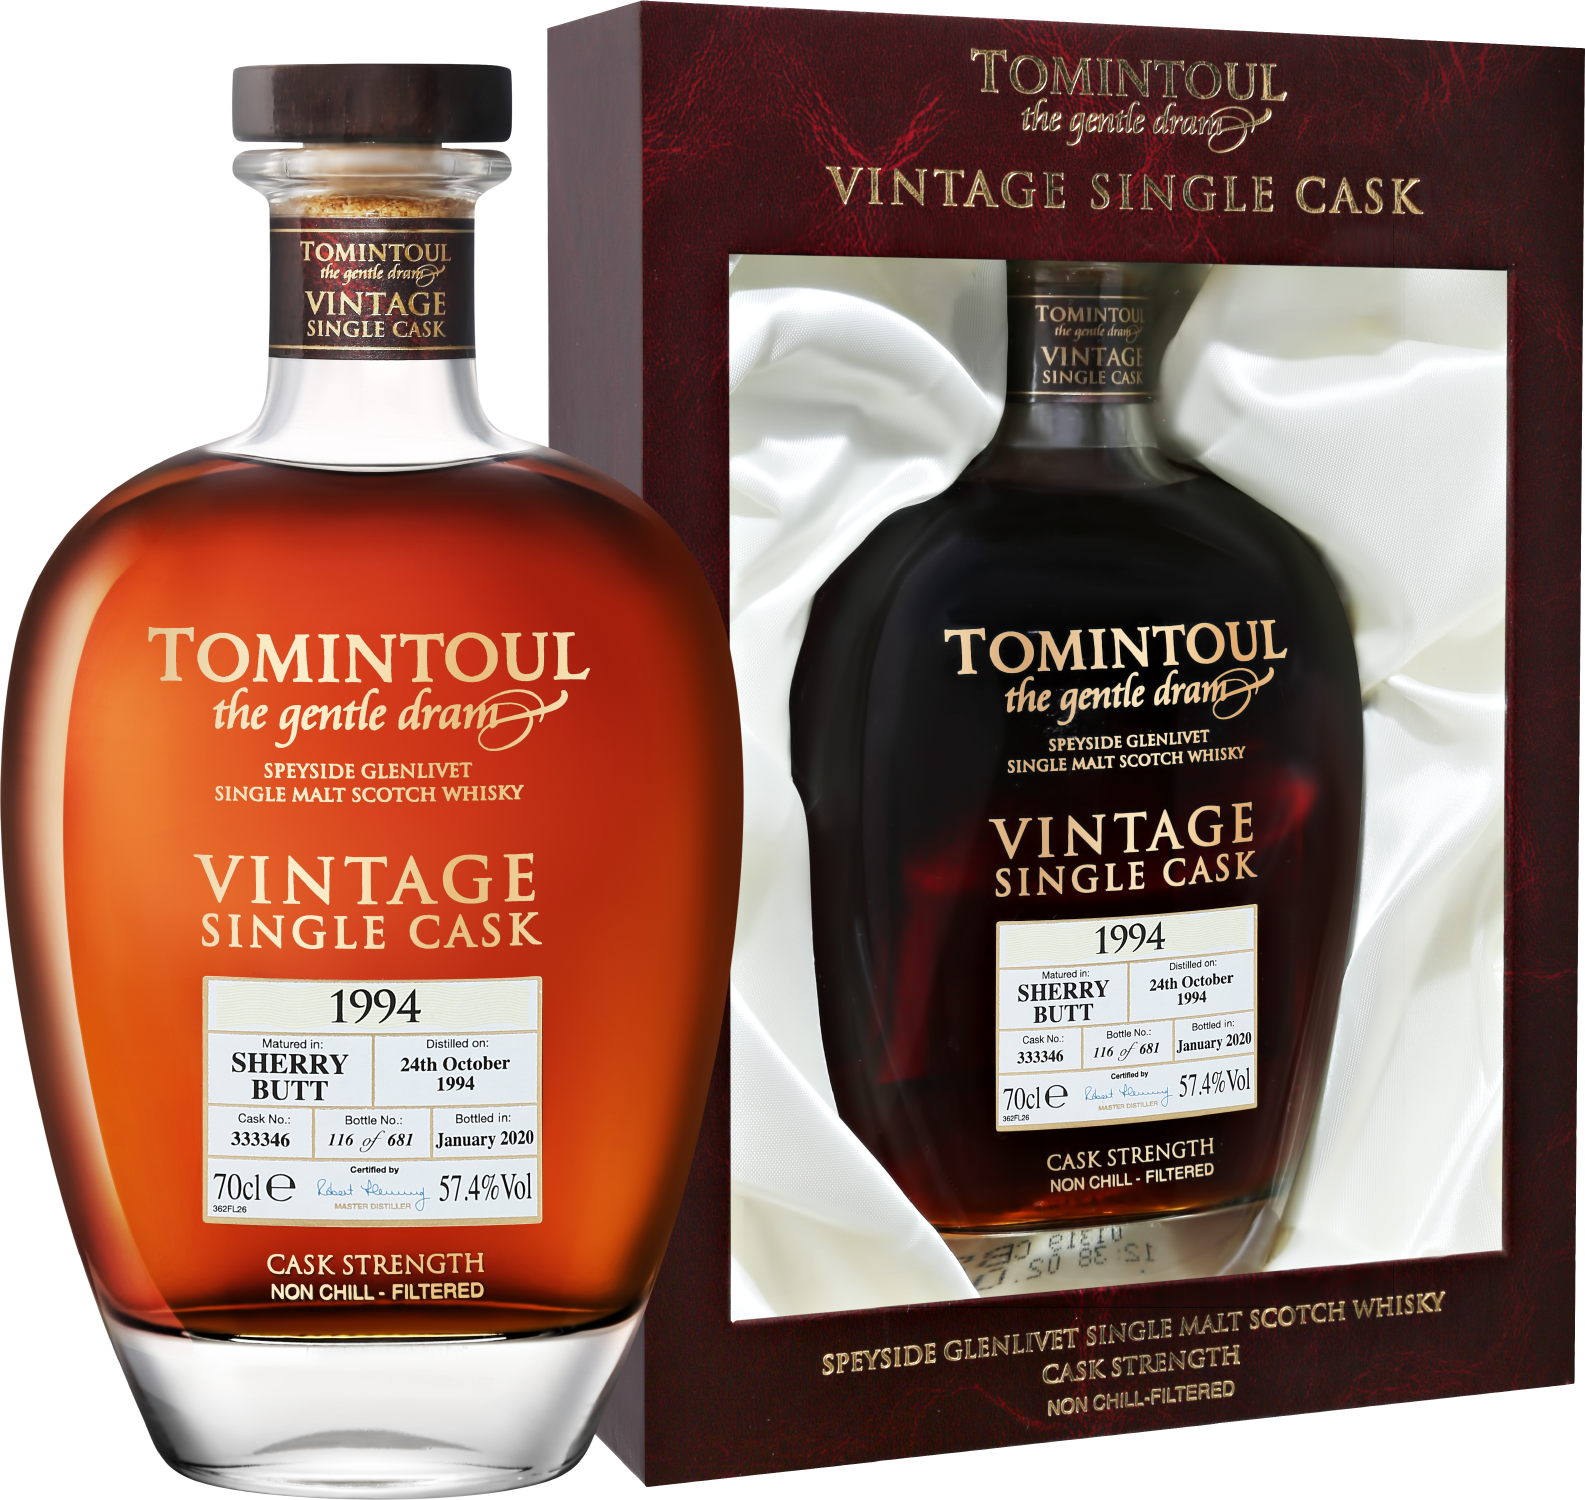 цена Tomintoul 1994 Speyside Glenlivet Vintage Single Cask Single Malt Scotch Whisky (gift box)